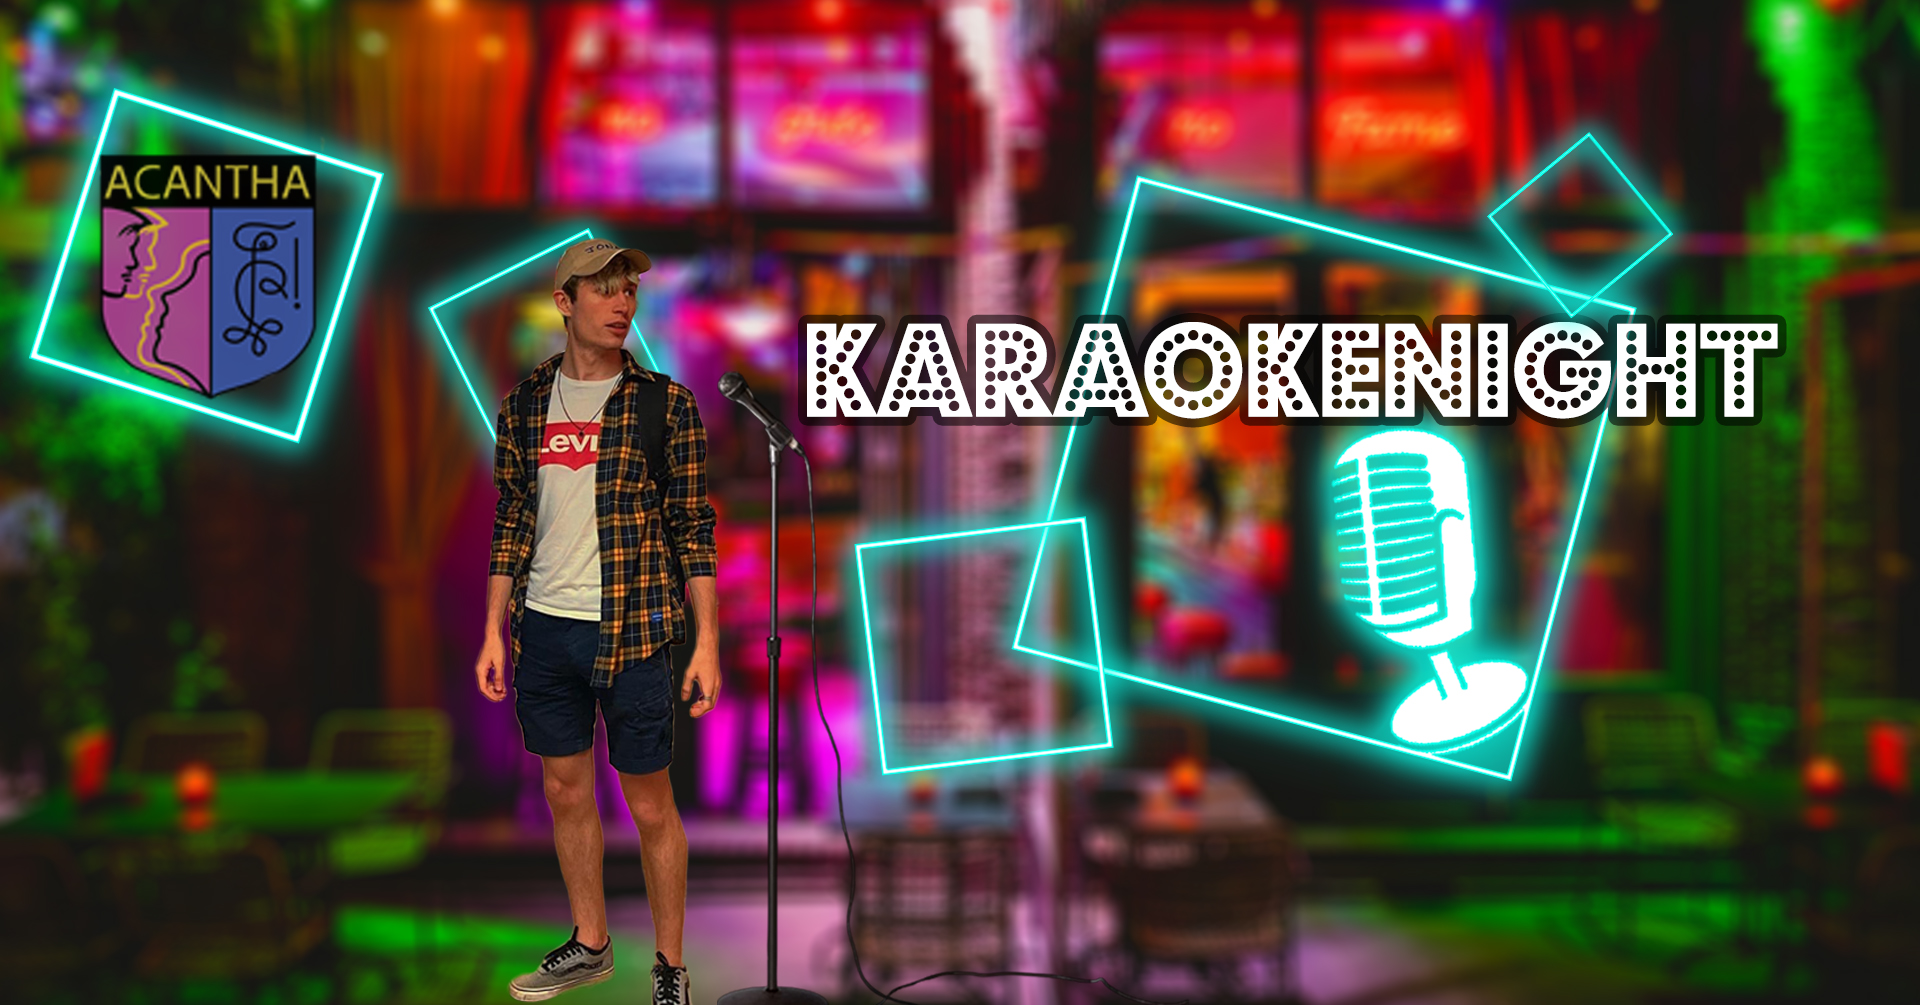 Acantha Karaoke